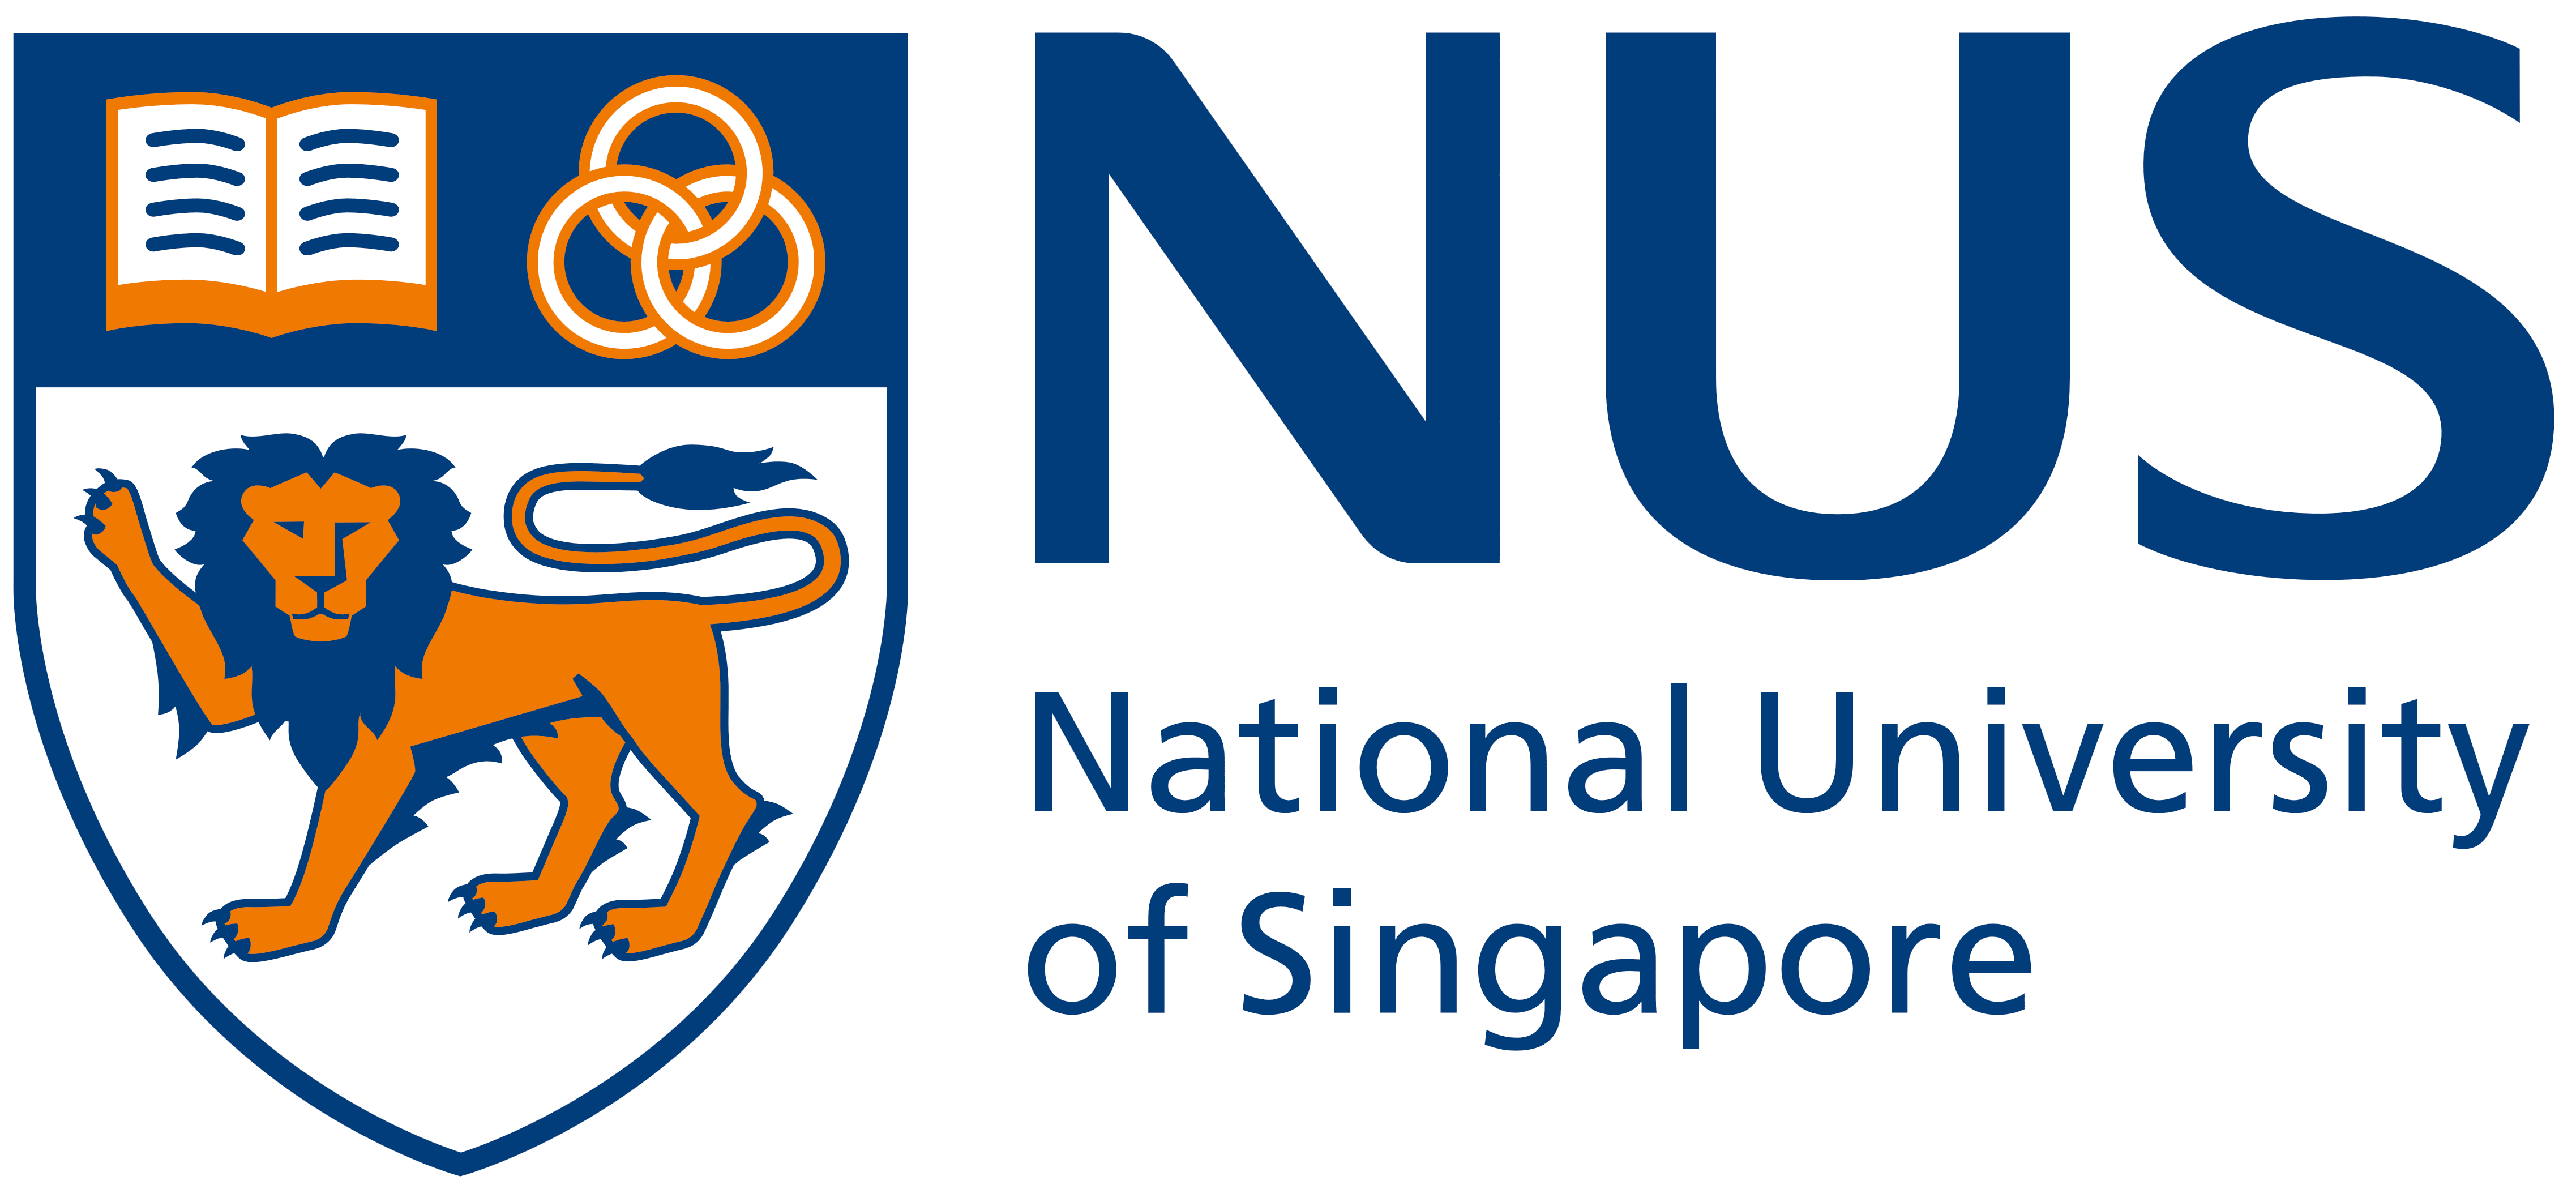 National University Of Singapore (NUS) – Logos Download